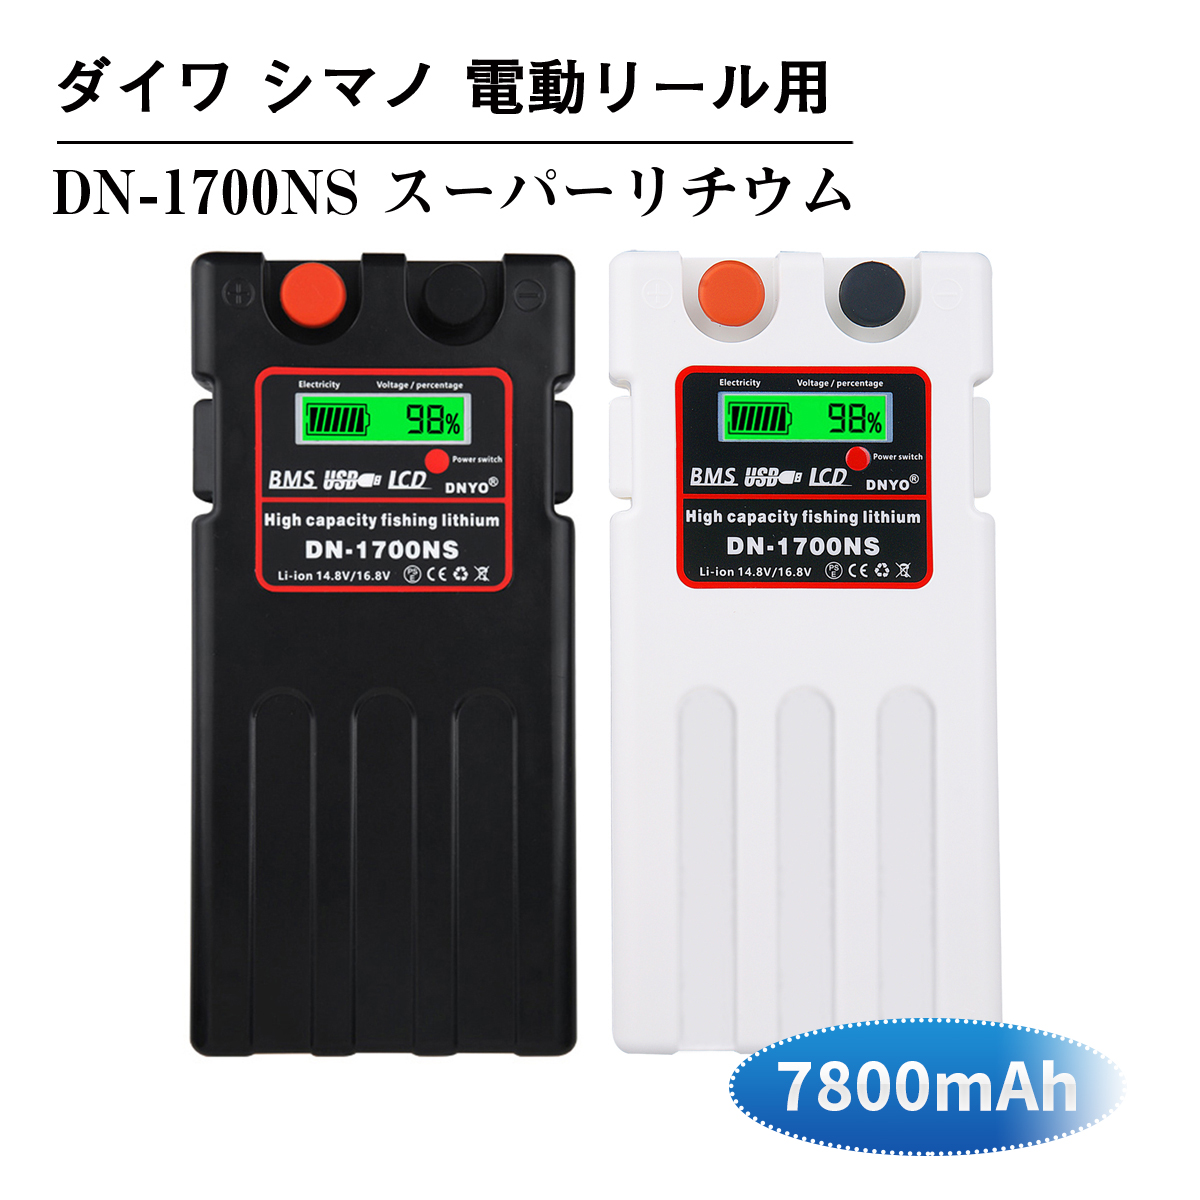 軽くて持ち運びに便利 予約販売 充電残量が表示される USBにてスマホを充電できる ダイワ シマノ 電動リール用 売却 DN-1700NS 日本語説明書付きスーパーリチウム 7800mAh バッテリー セット 14.8V 電動リール パナソニックセル内蔵 充電器 互換バッテリー